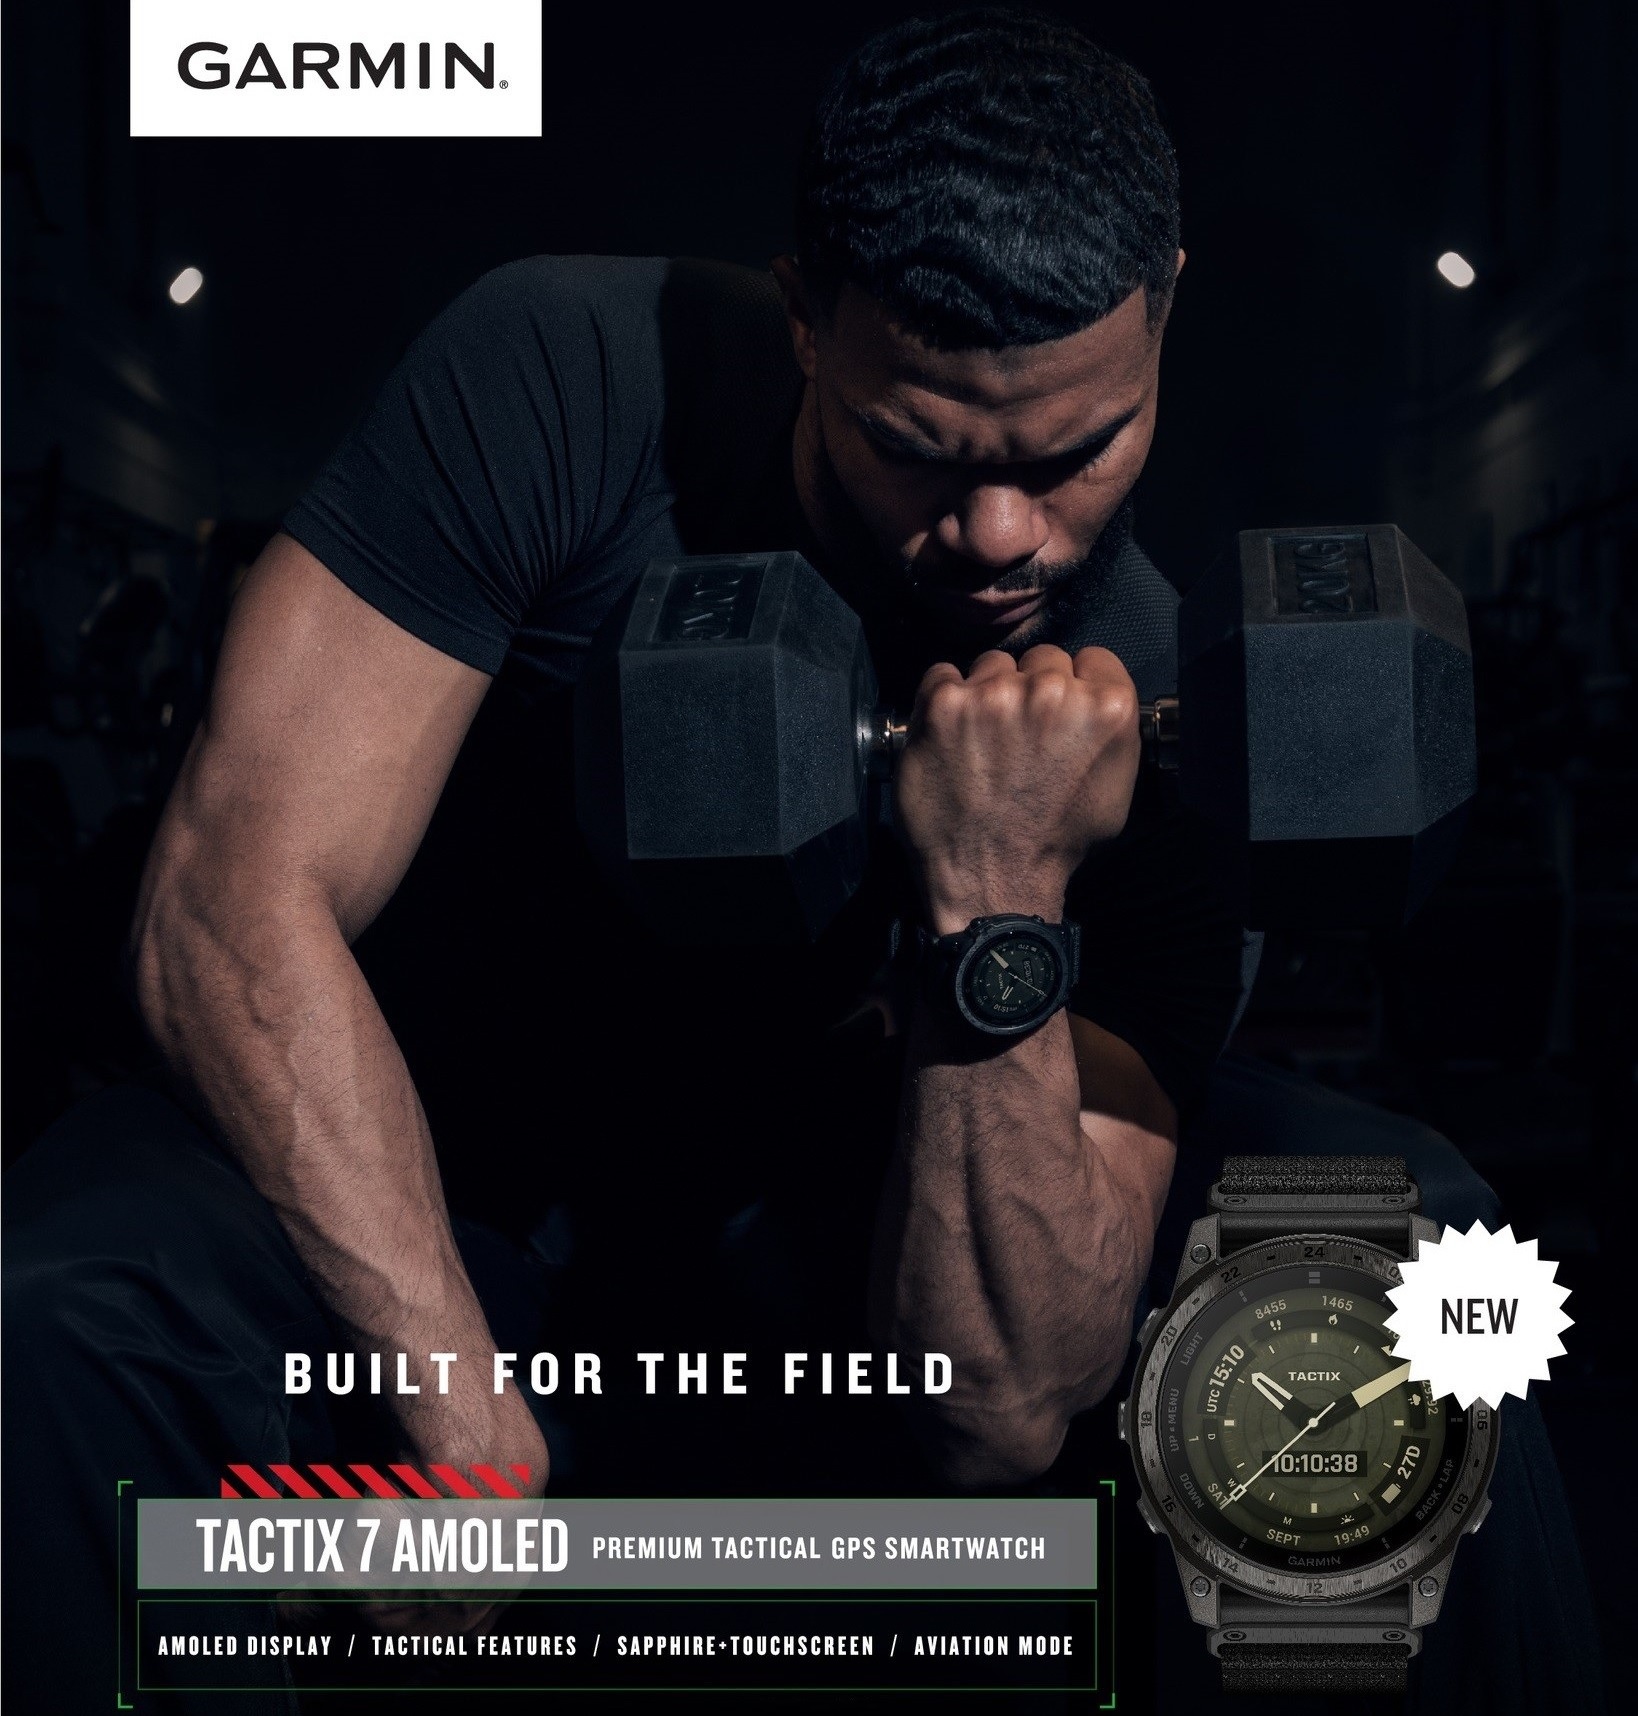 Đồng hồ thông minh Garmin tactix 7 – AMOLED Edition_Mới, hàng chính hãng